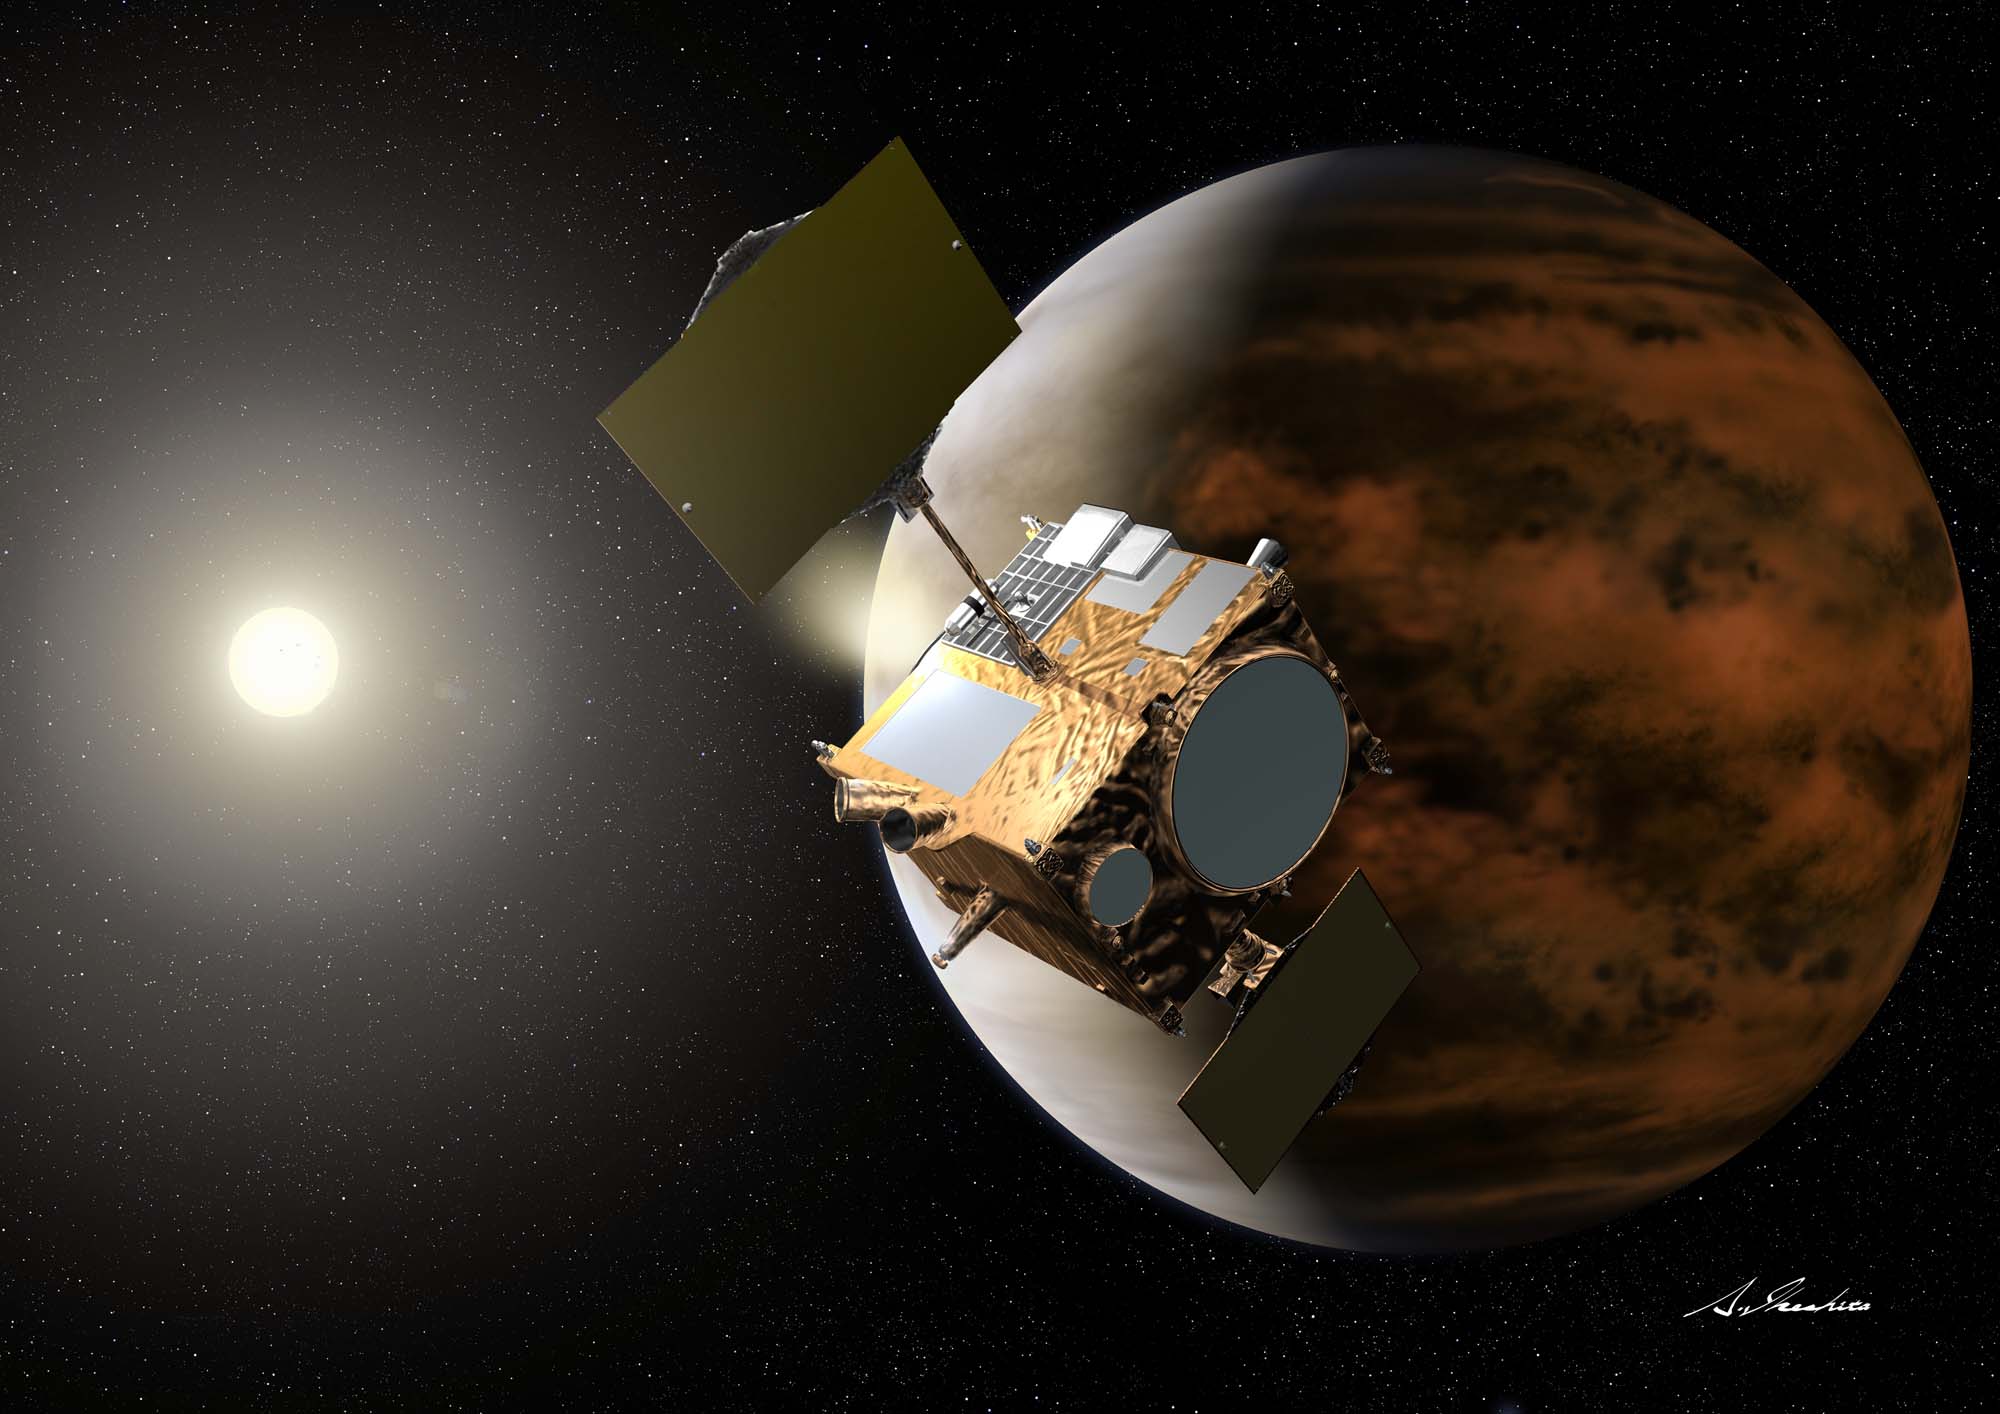 Vue d’artiste de la sonde Planet-C, ou Venus Climate Orbiter, alias Akatsuki. Lancée en mai 2010, elle s’est finalement insérée en orbite autour de Vénus le 7 décembre 2015 après une malencontreuse errance de 5 ans autour du Soleil. © Jaxa